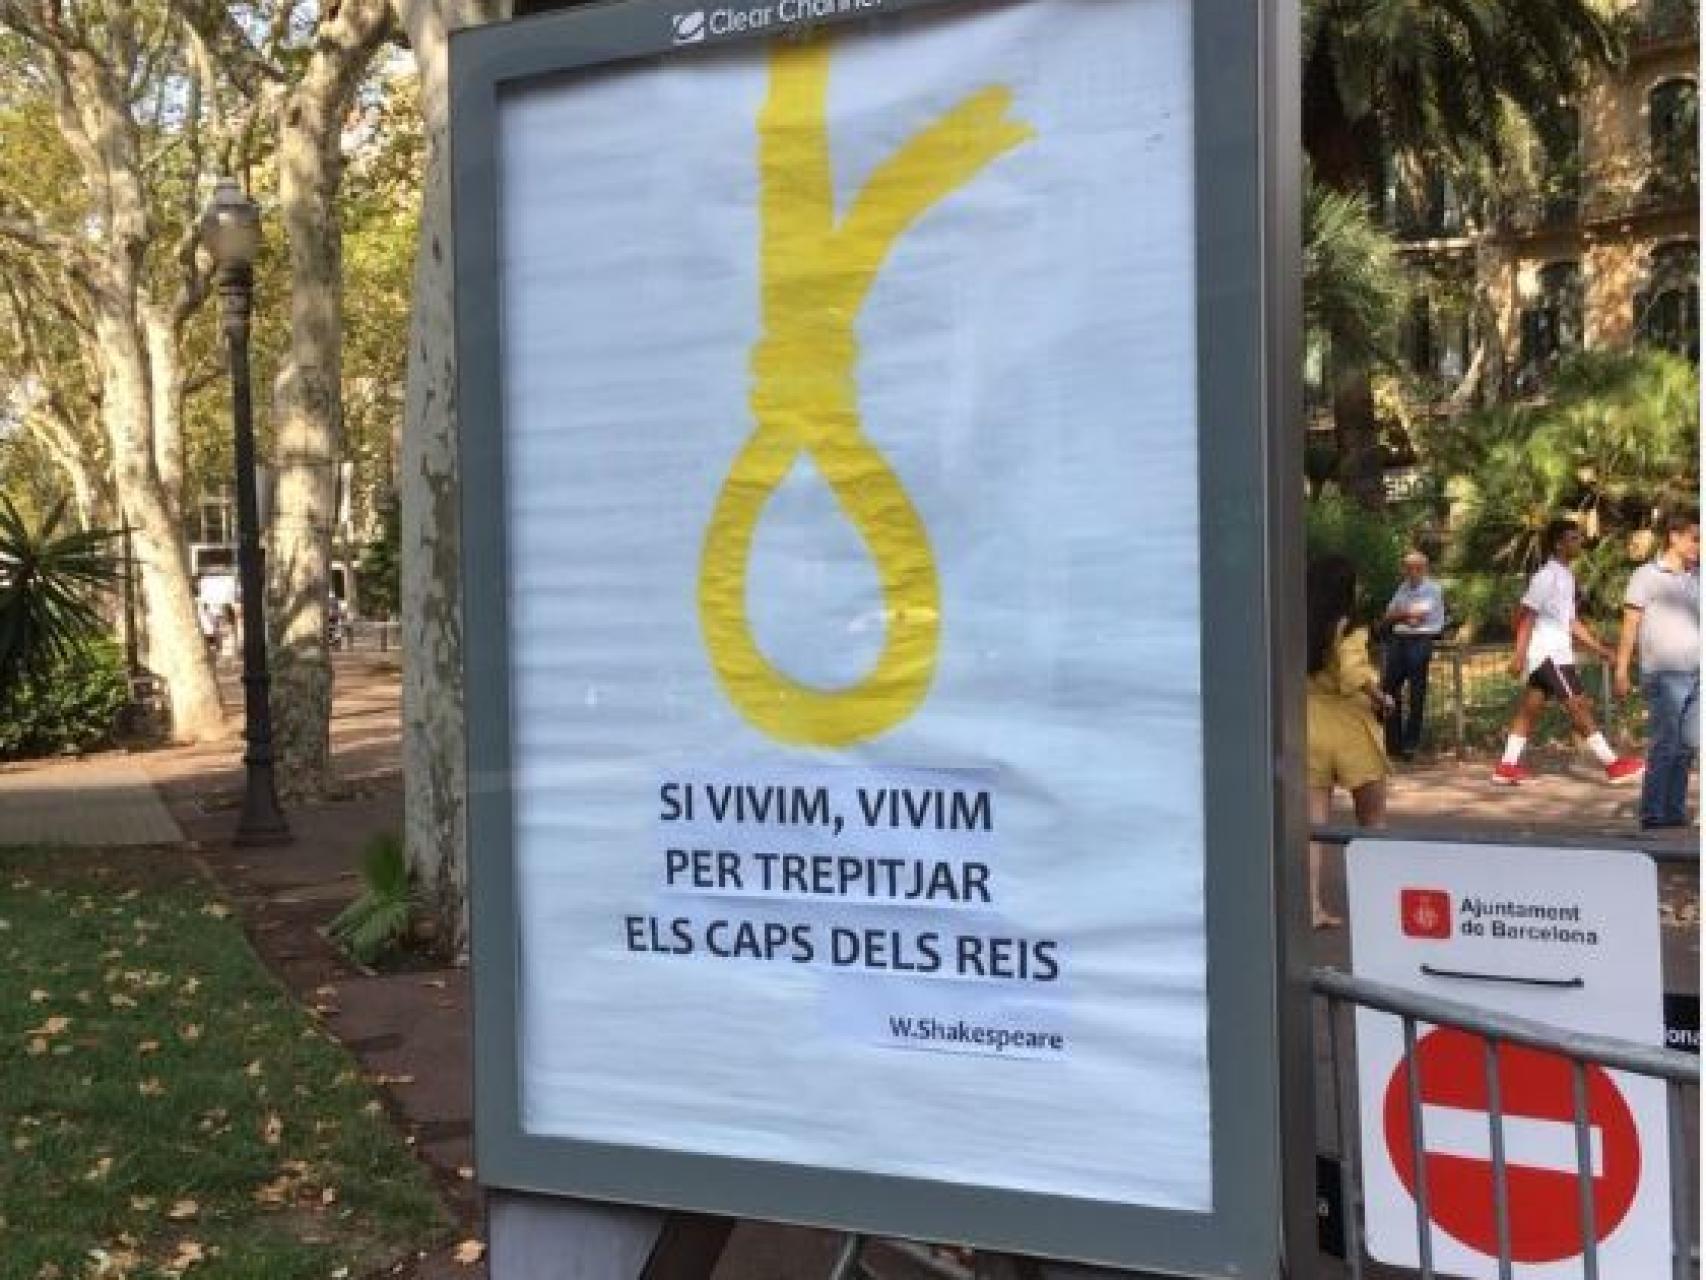 Una soga amarilla, nueva campaña en Barcelona: Vivimos para pisar las cabezas de los reyes